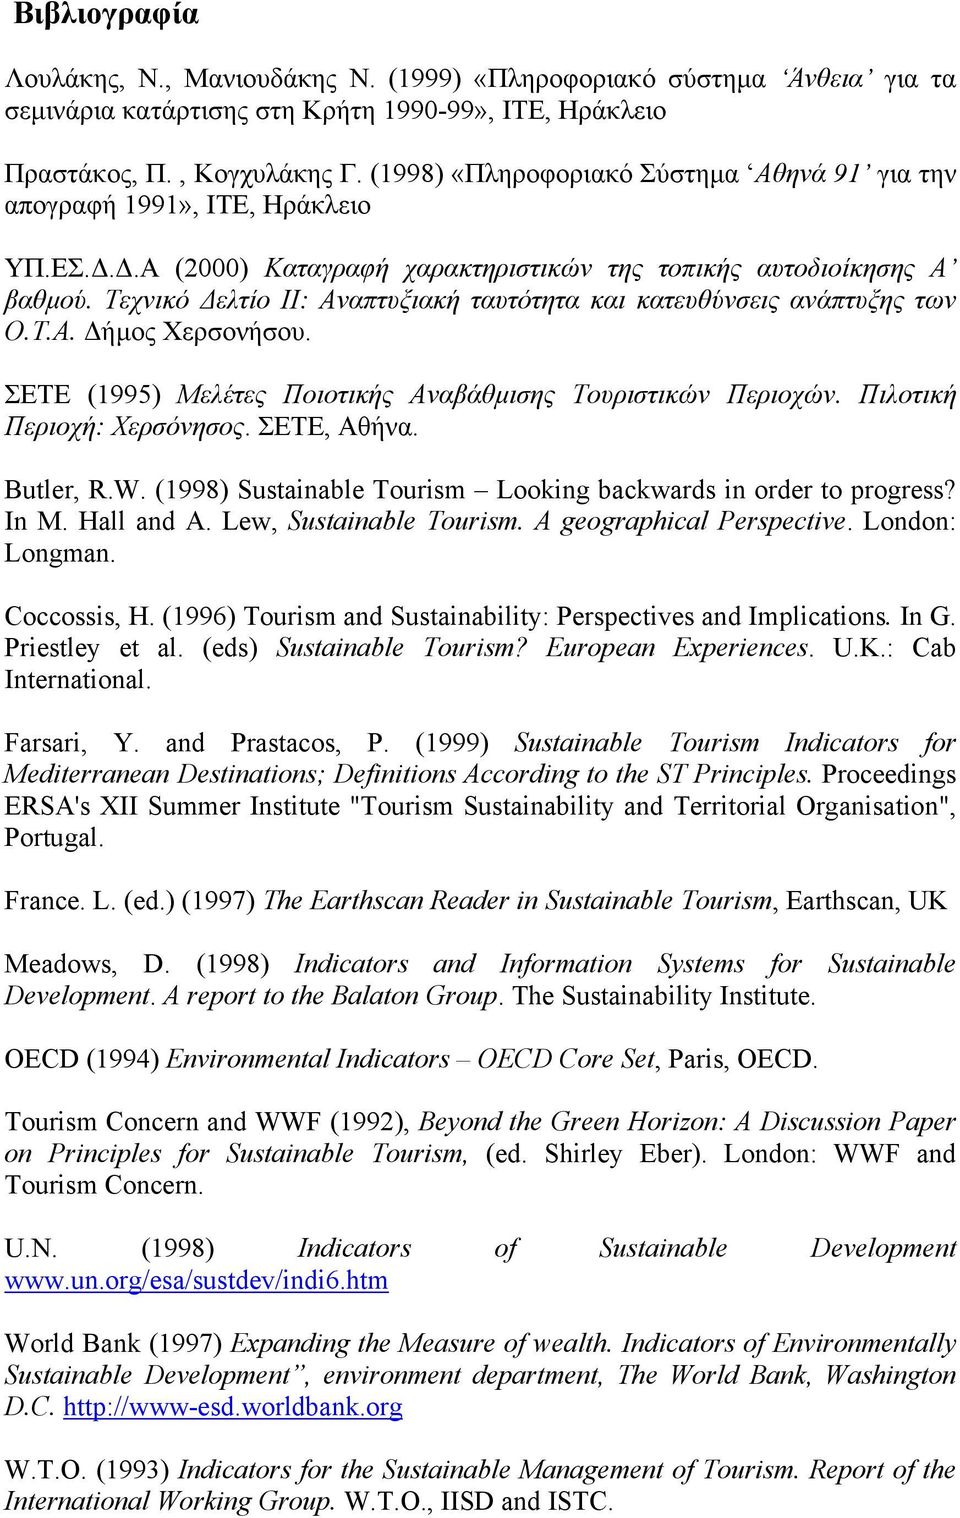 Τεχνικό ελτίο ΙΙ: Αναπτυξιακή ταυτότητα και κατευθύνσεις ανάπτυξης των Ο.Τ.Α. ήµος Χερσονήσου. ΣΕΤE (1995) Μελέτες Ποιοτικής Αναβάθµισης Τουριστικών Περιοχών. Πιλοτική Περιοχή: Χερσόνησος.